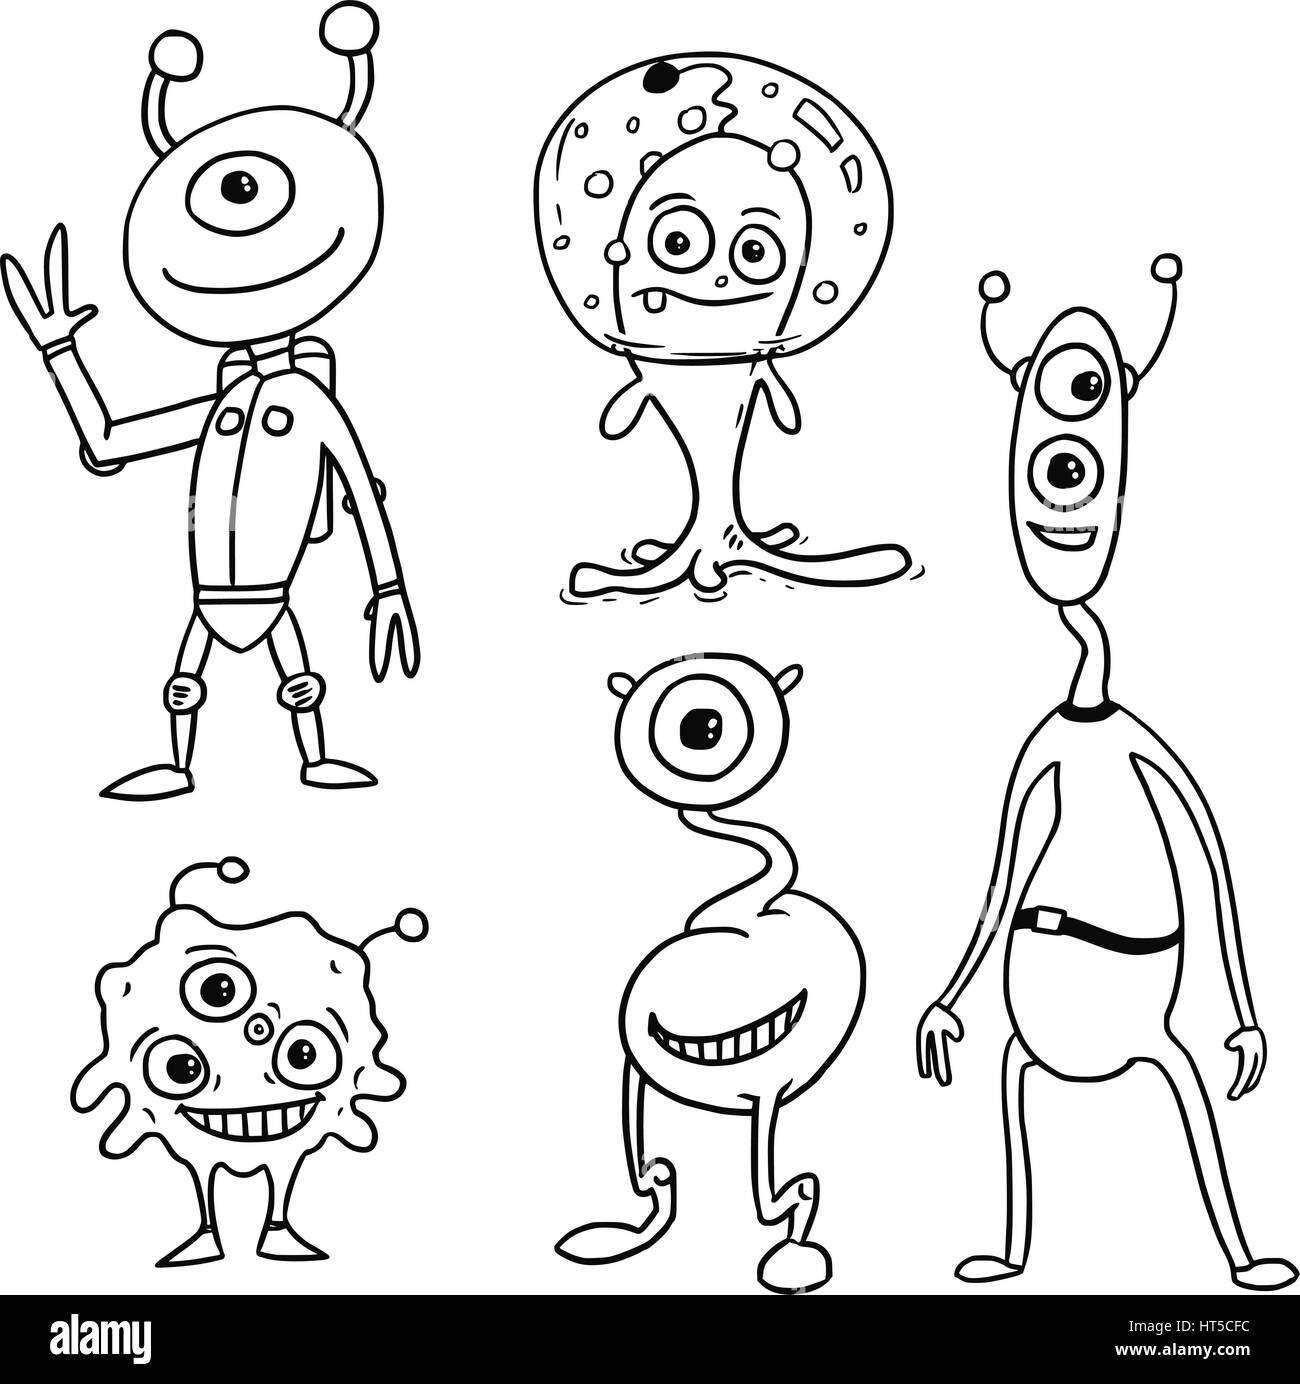 Vektor-Cartoon eingestellt 05 der freundliche Außerirdische Astronauten Stock Vektor